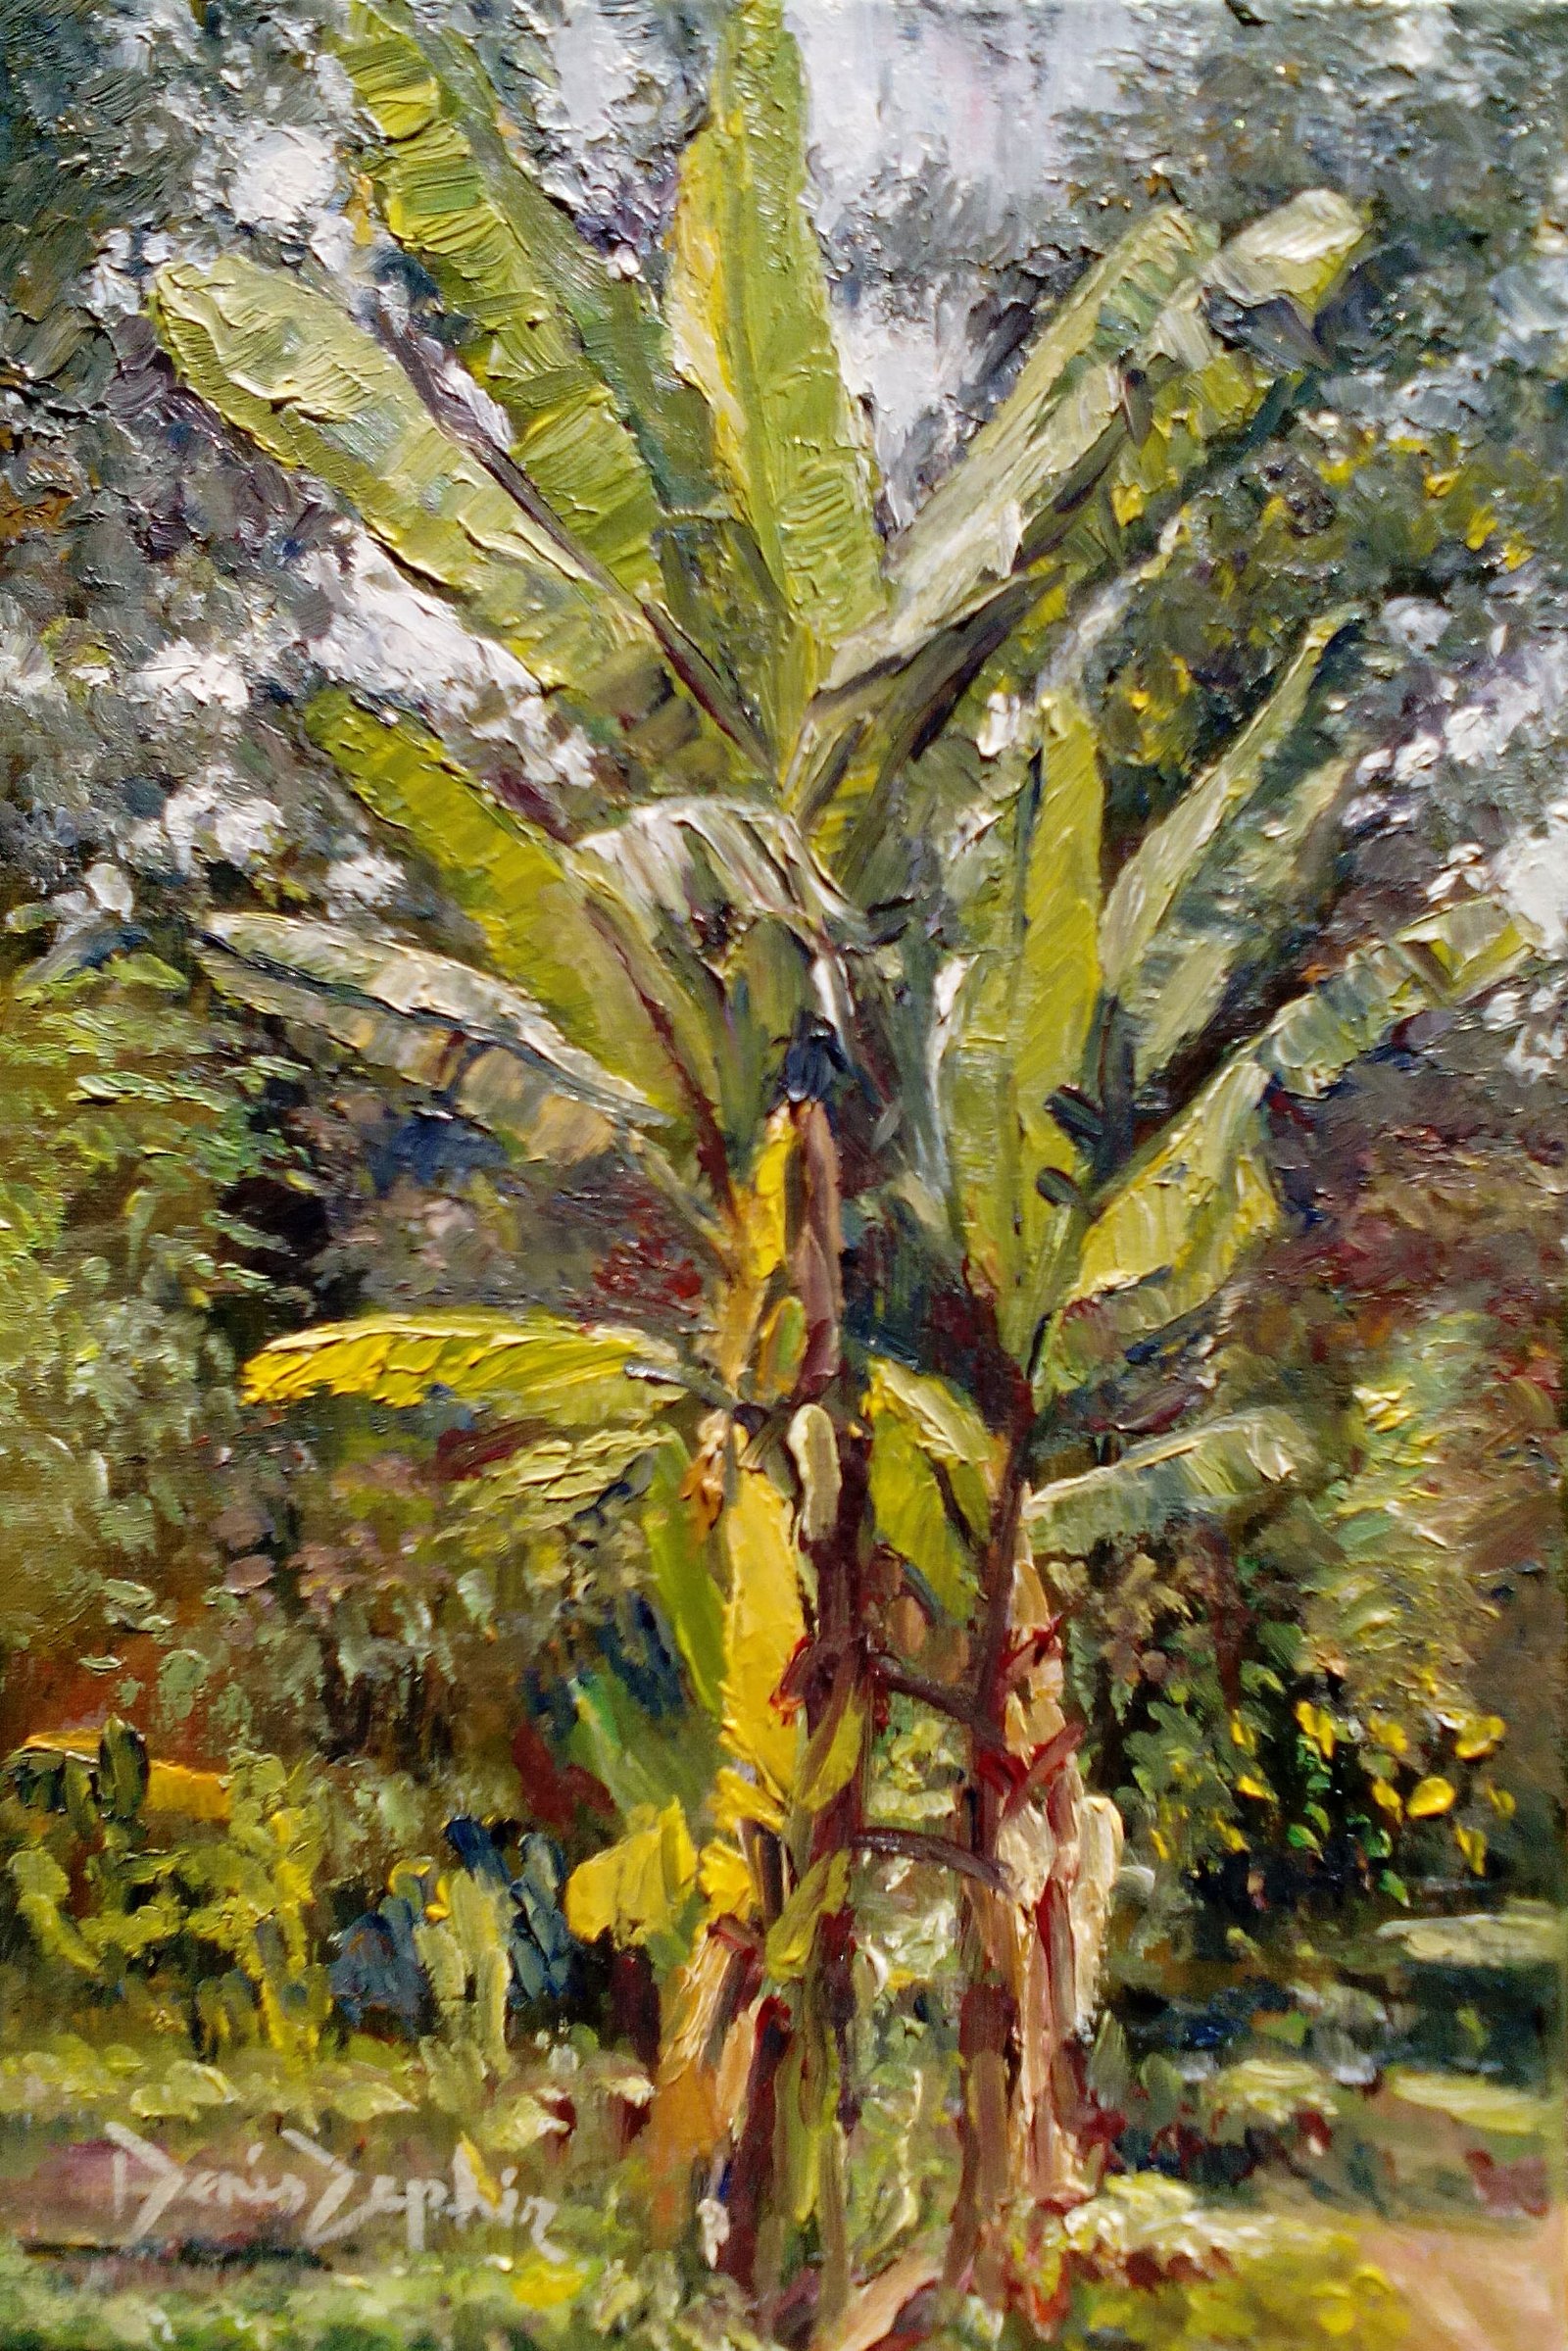 Wild Banana tree